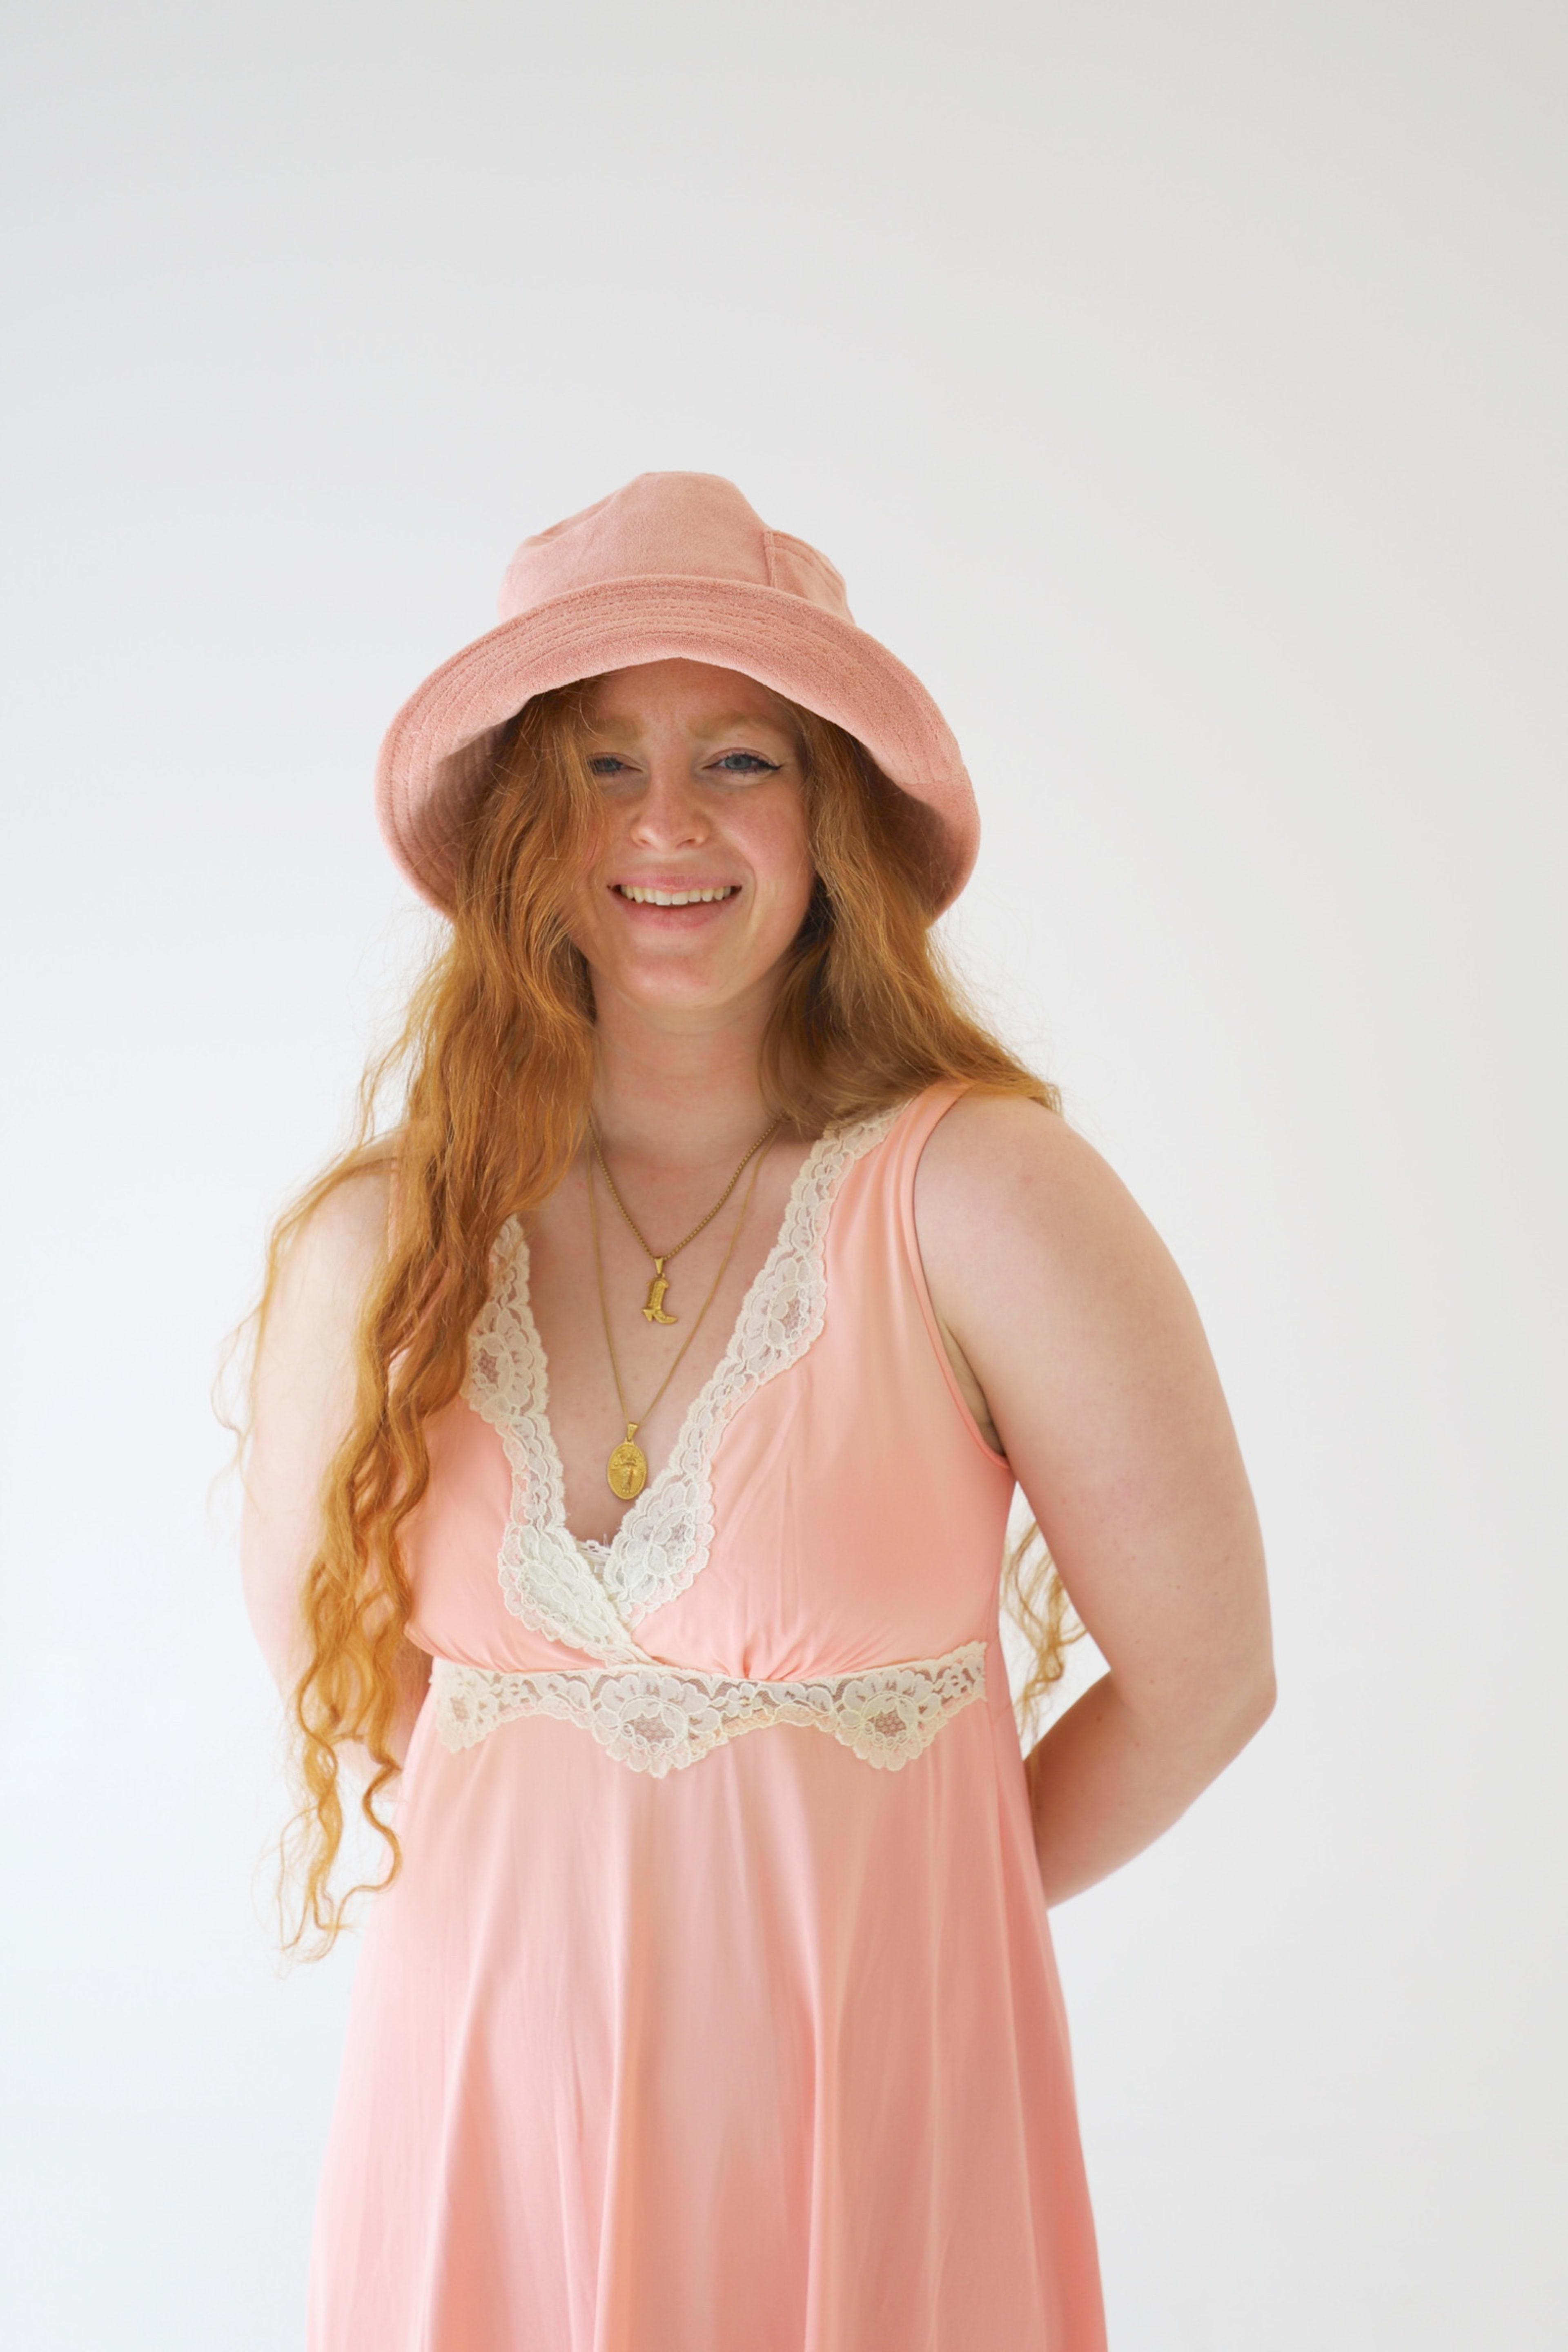 Un shooting photo de mode mettant en scène une femme vêtue d’une robe rose et d’un chapeau.